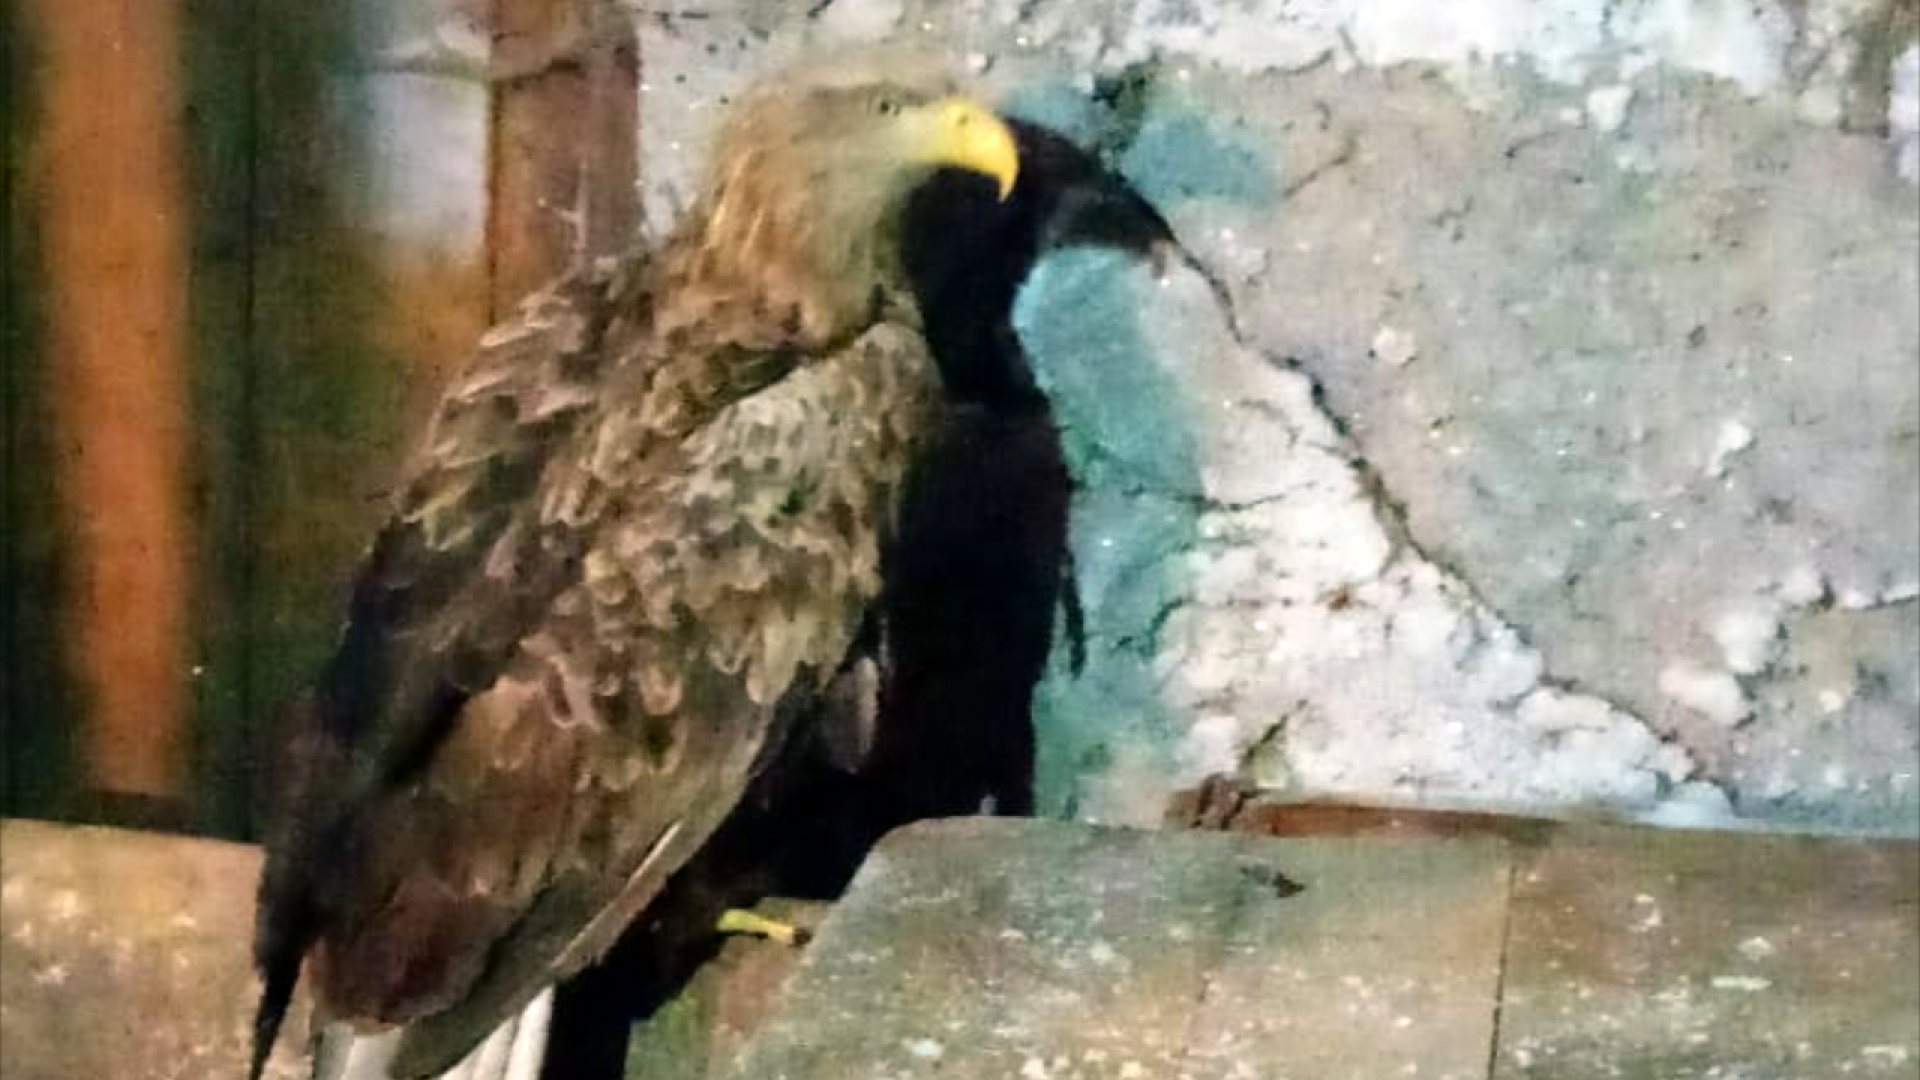 Раненый орел. Раненого краснокнижного орла спасли армянские экологи.